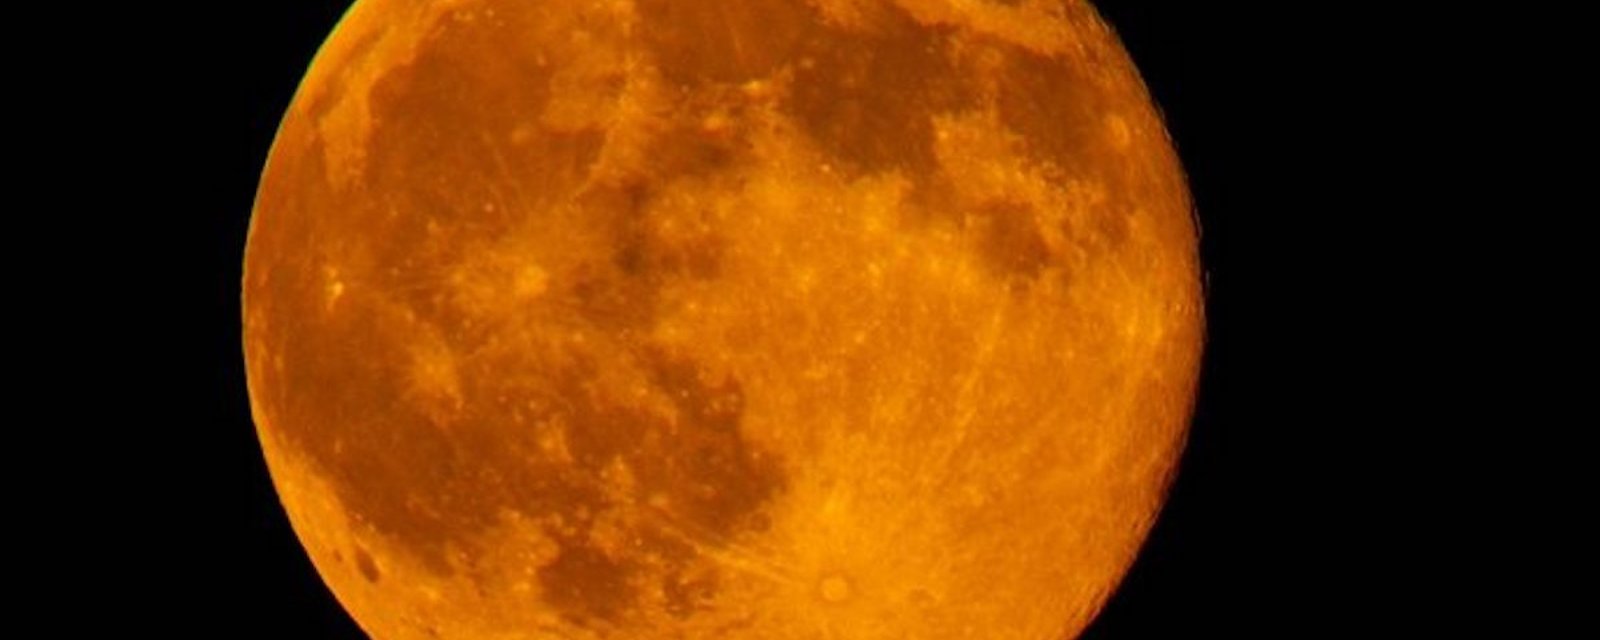 Ce soir, surveillez la Lune des moissons!